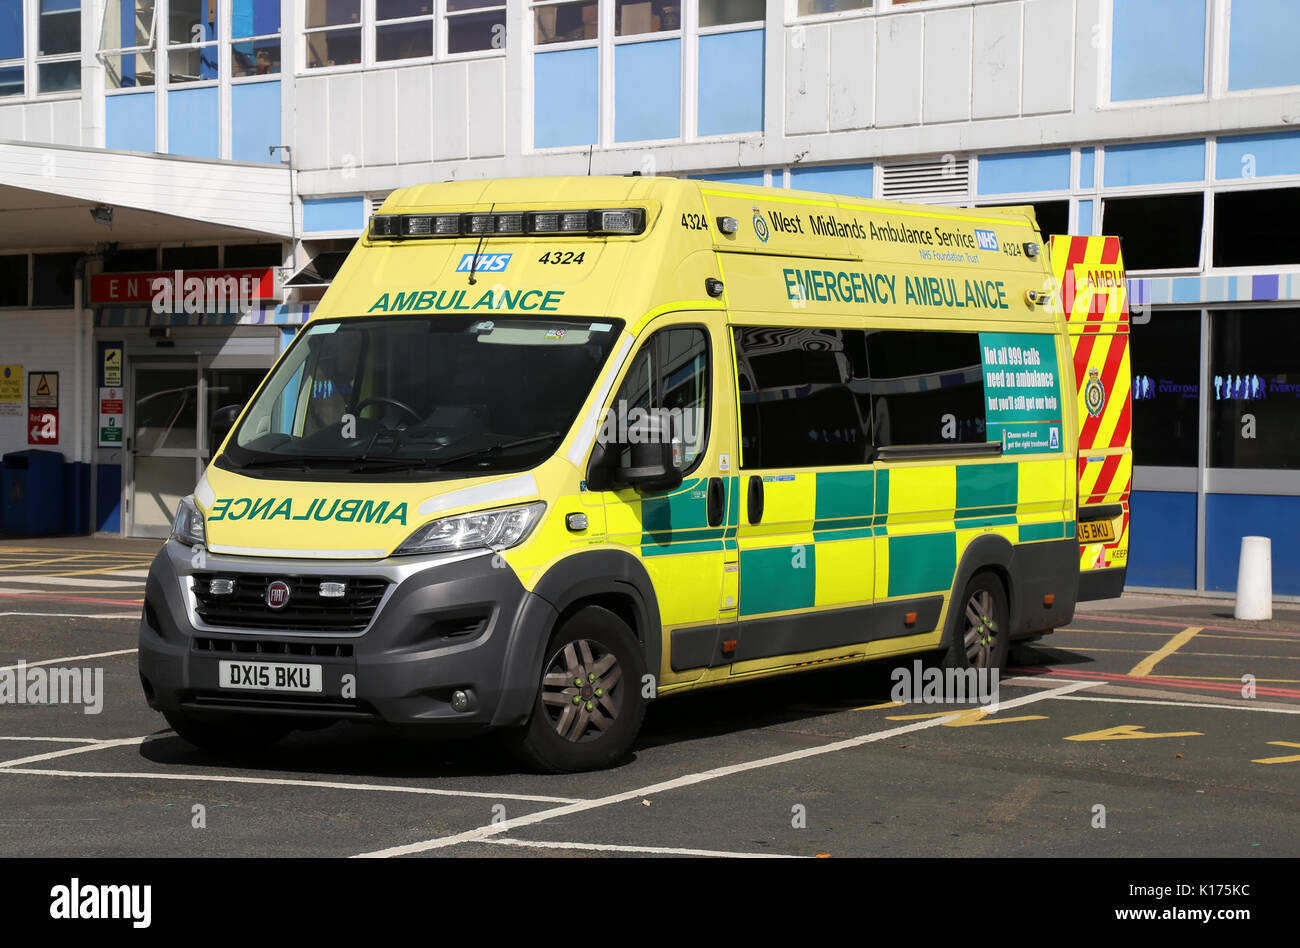 Un Fiat emergencia ambulancia perteneciente a la región de West Midlands, Servicio de Ambulancias, visto en Birmingham, Reino Unido. Foto de stock